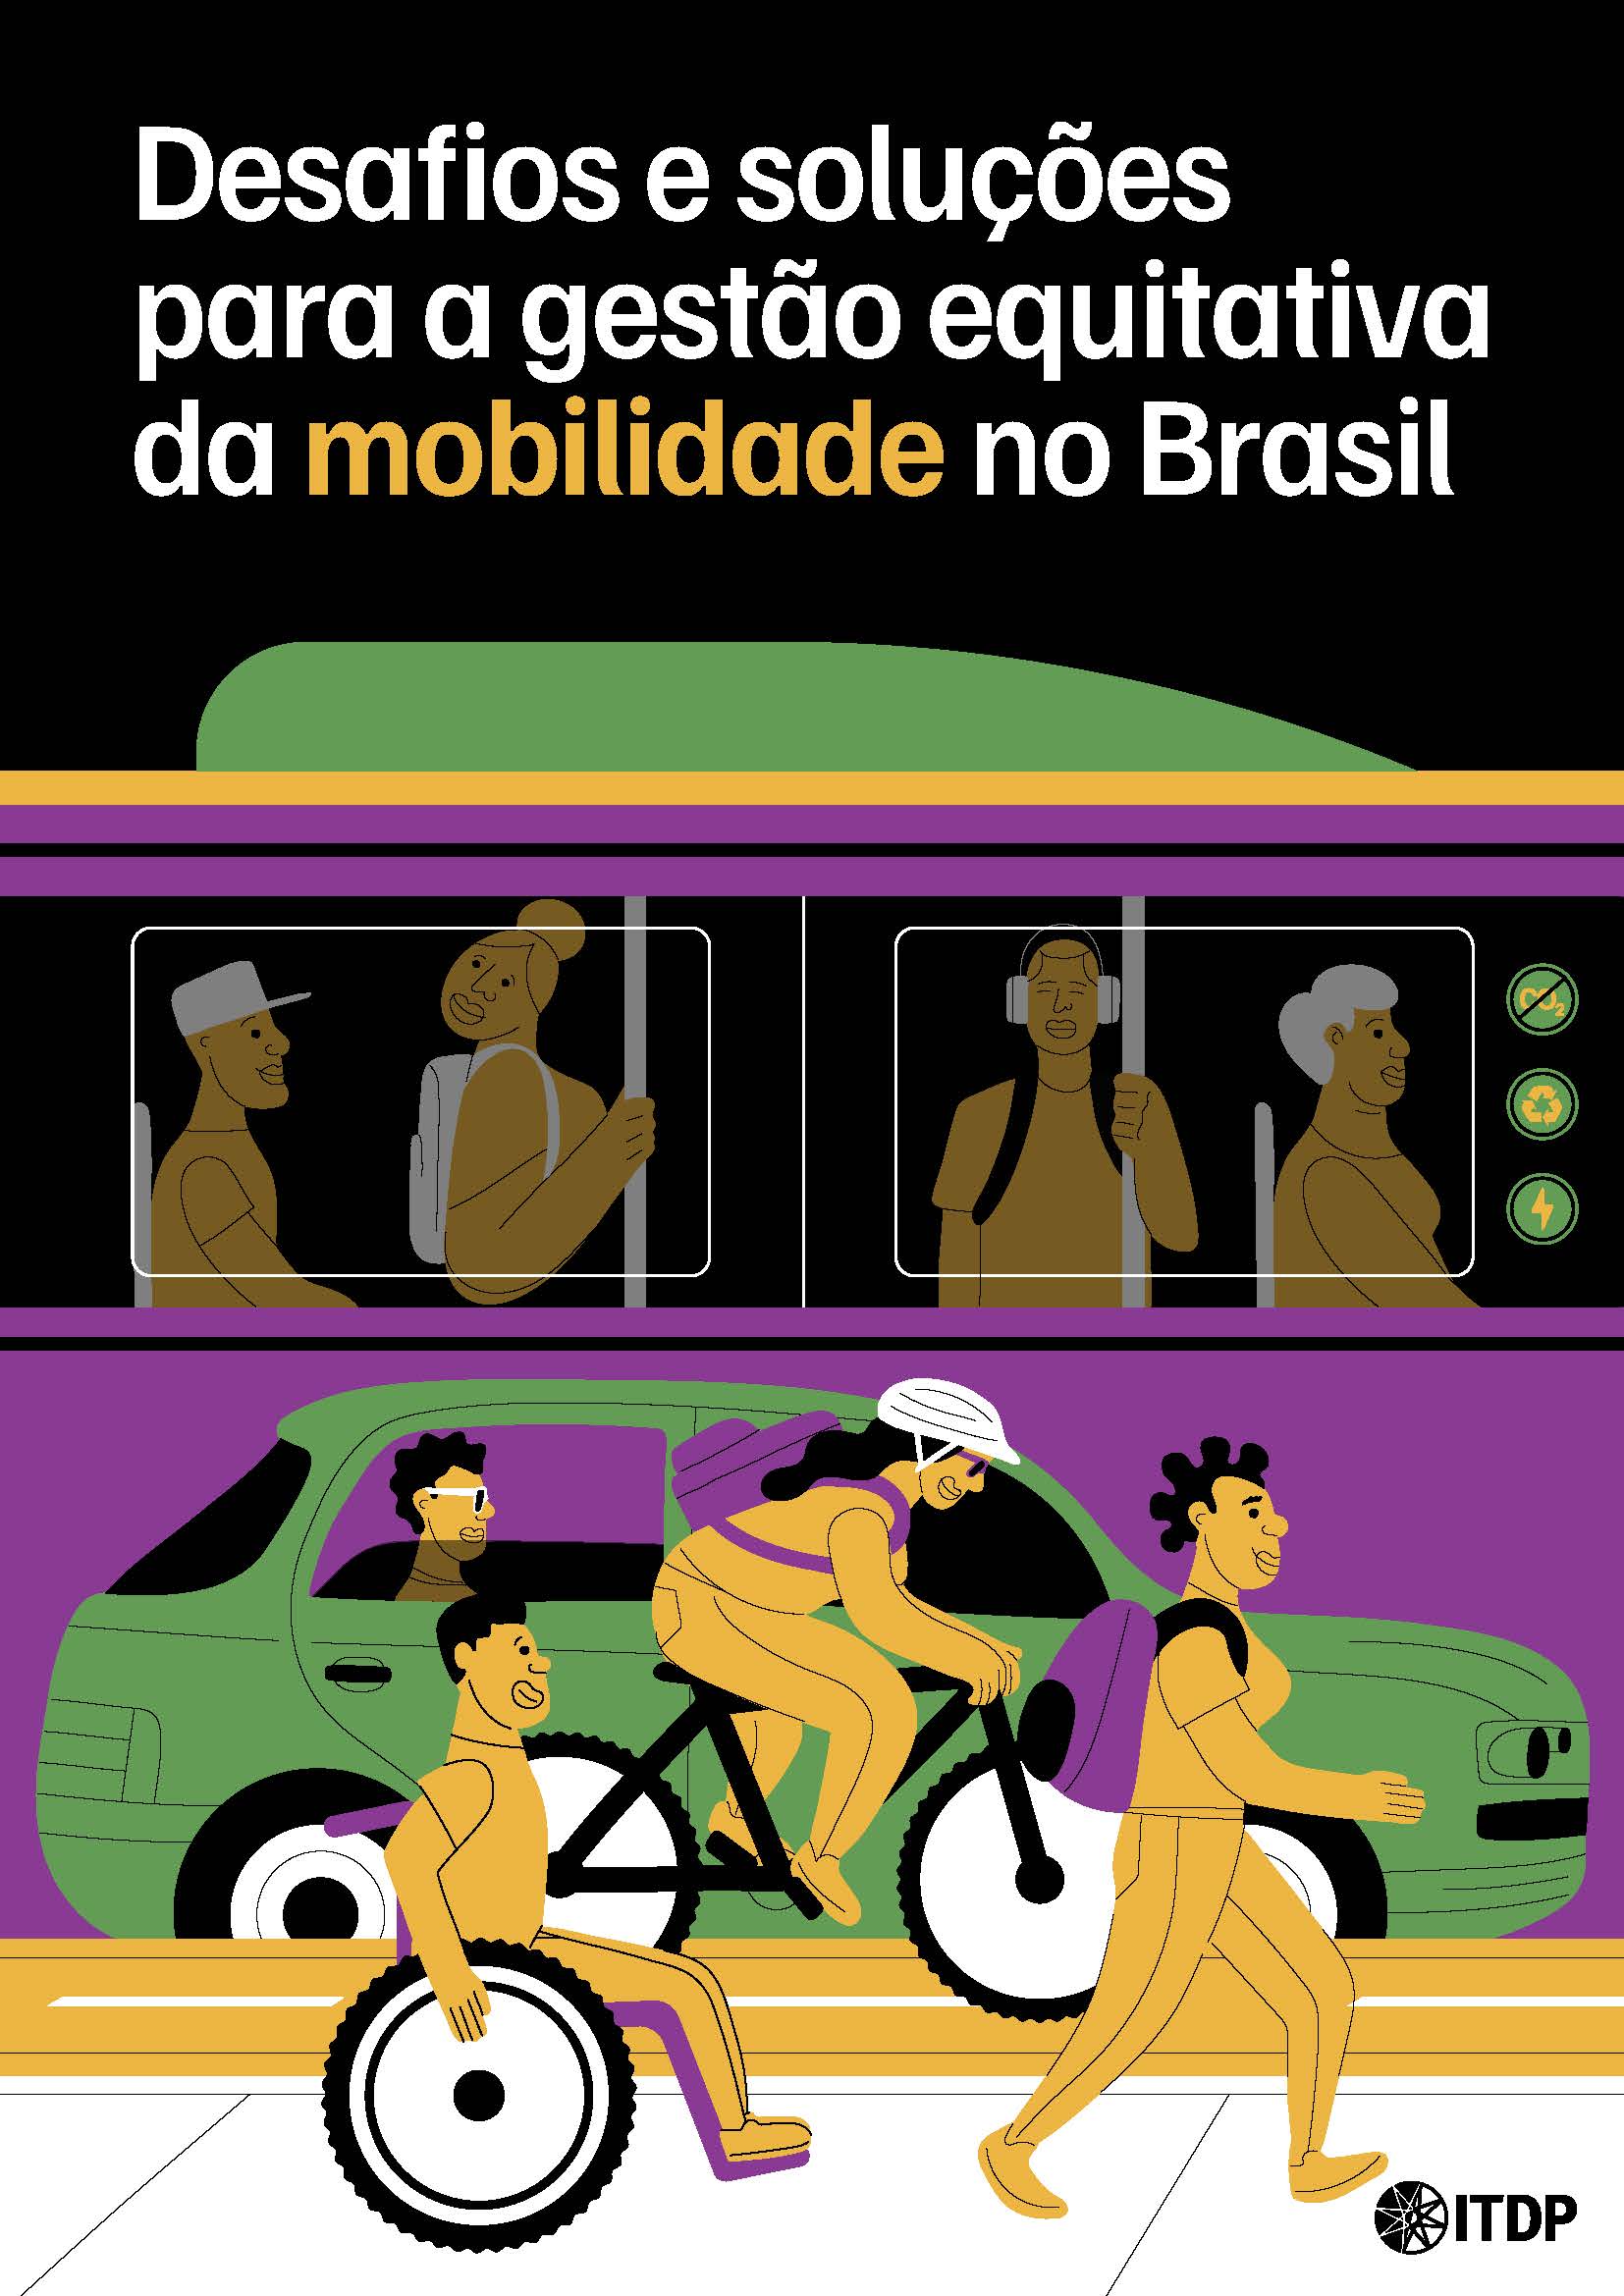 Desafios e soluções para a gestão equitativa da mobilidade no Brasil